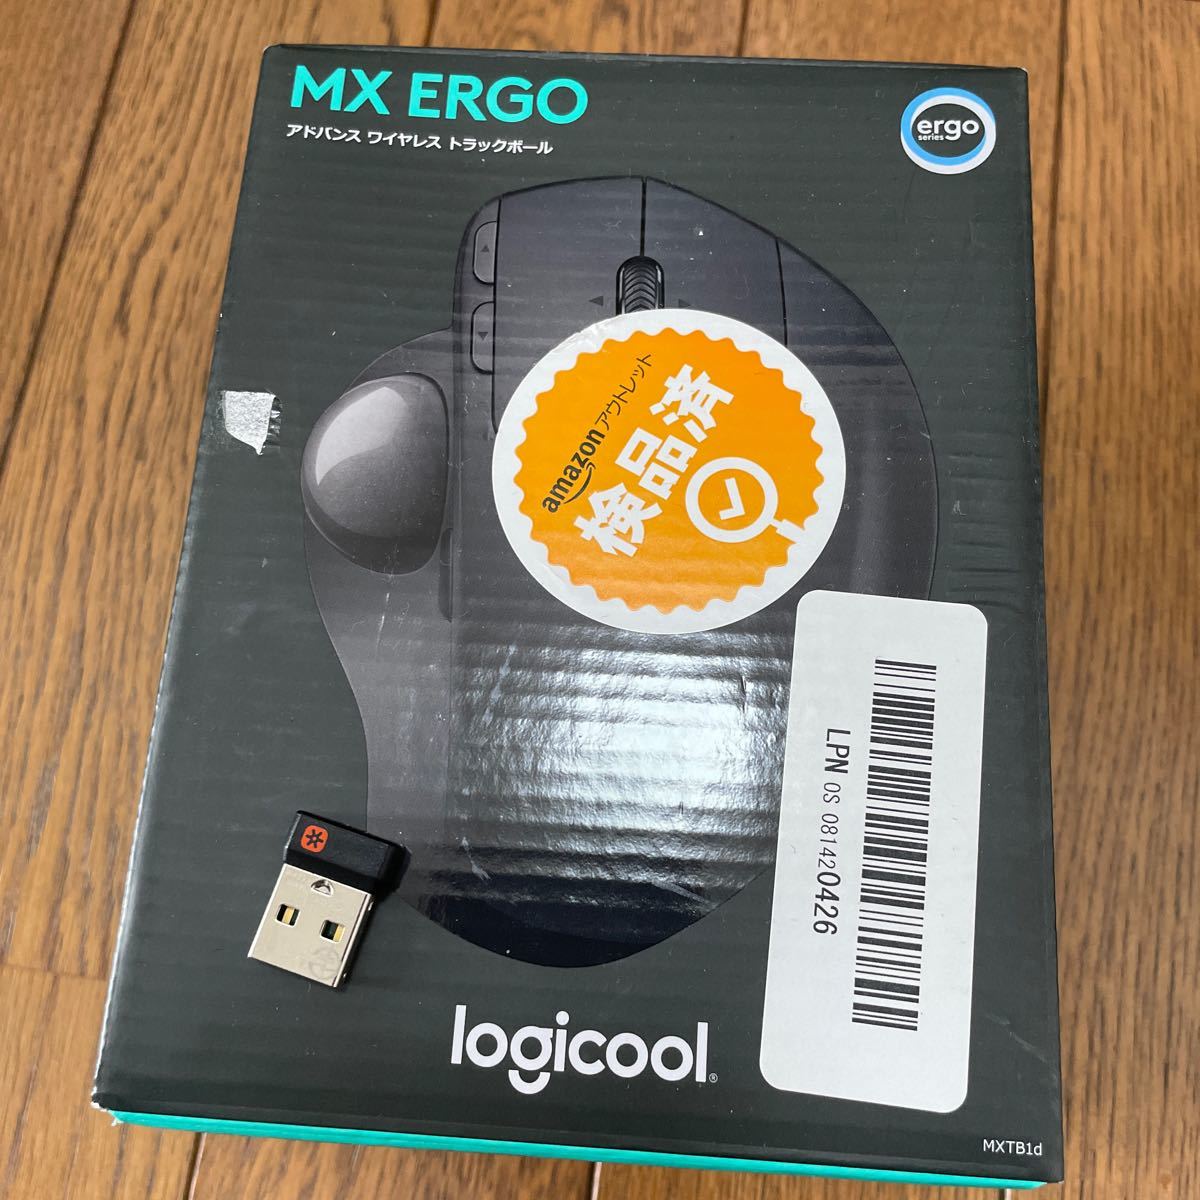 Amazon限定ロジクール ワイヤレストラックボール MX ERGO MXTB1d Bluetooth Unifying 8ボタン 高速充電式 マウス 国内正規品 Logicool _画像5